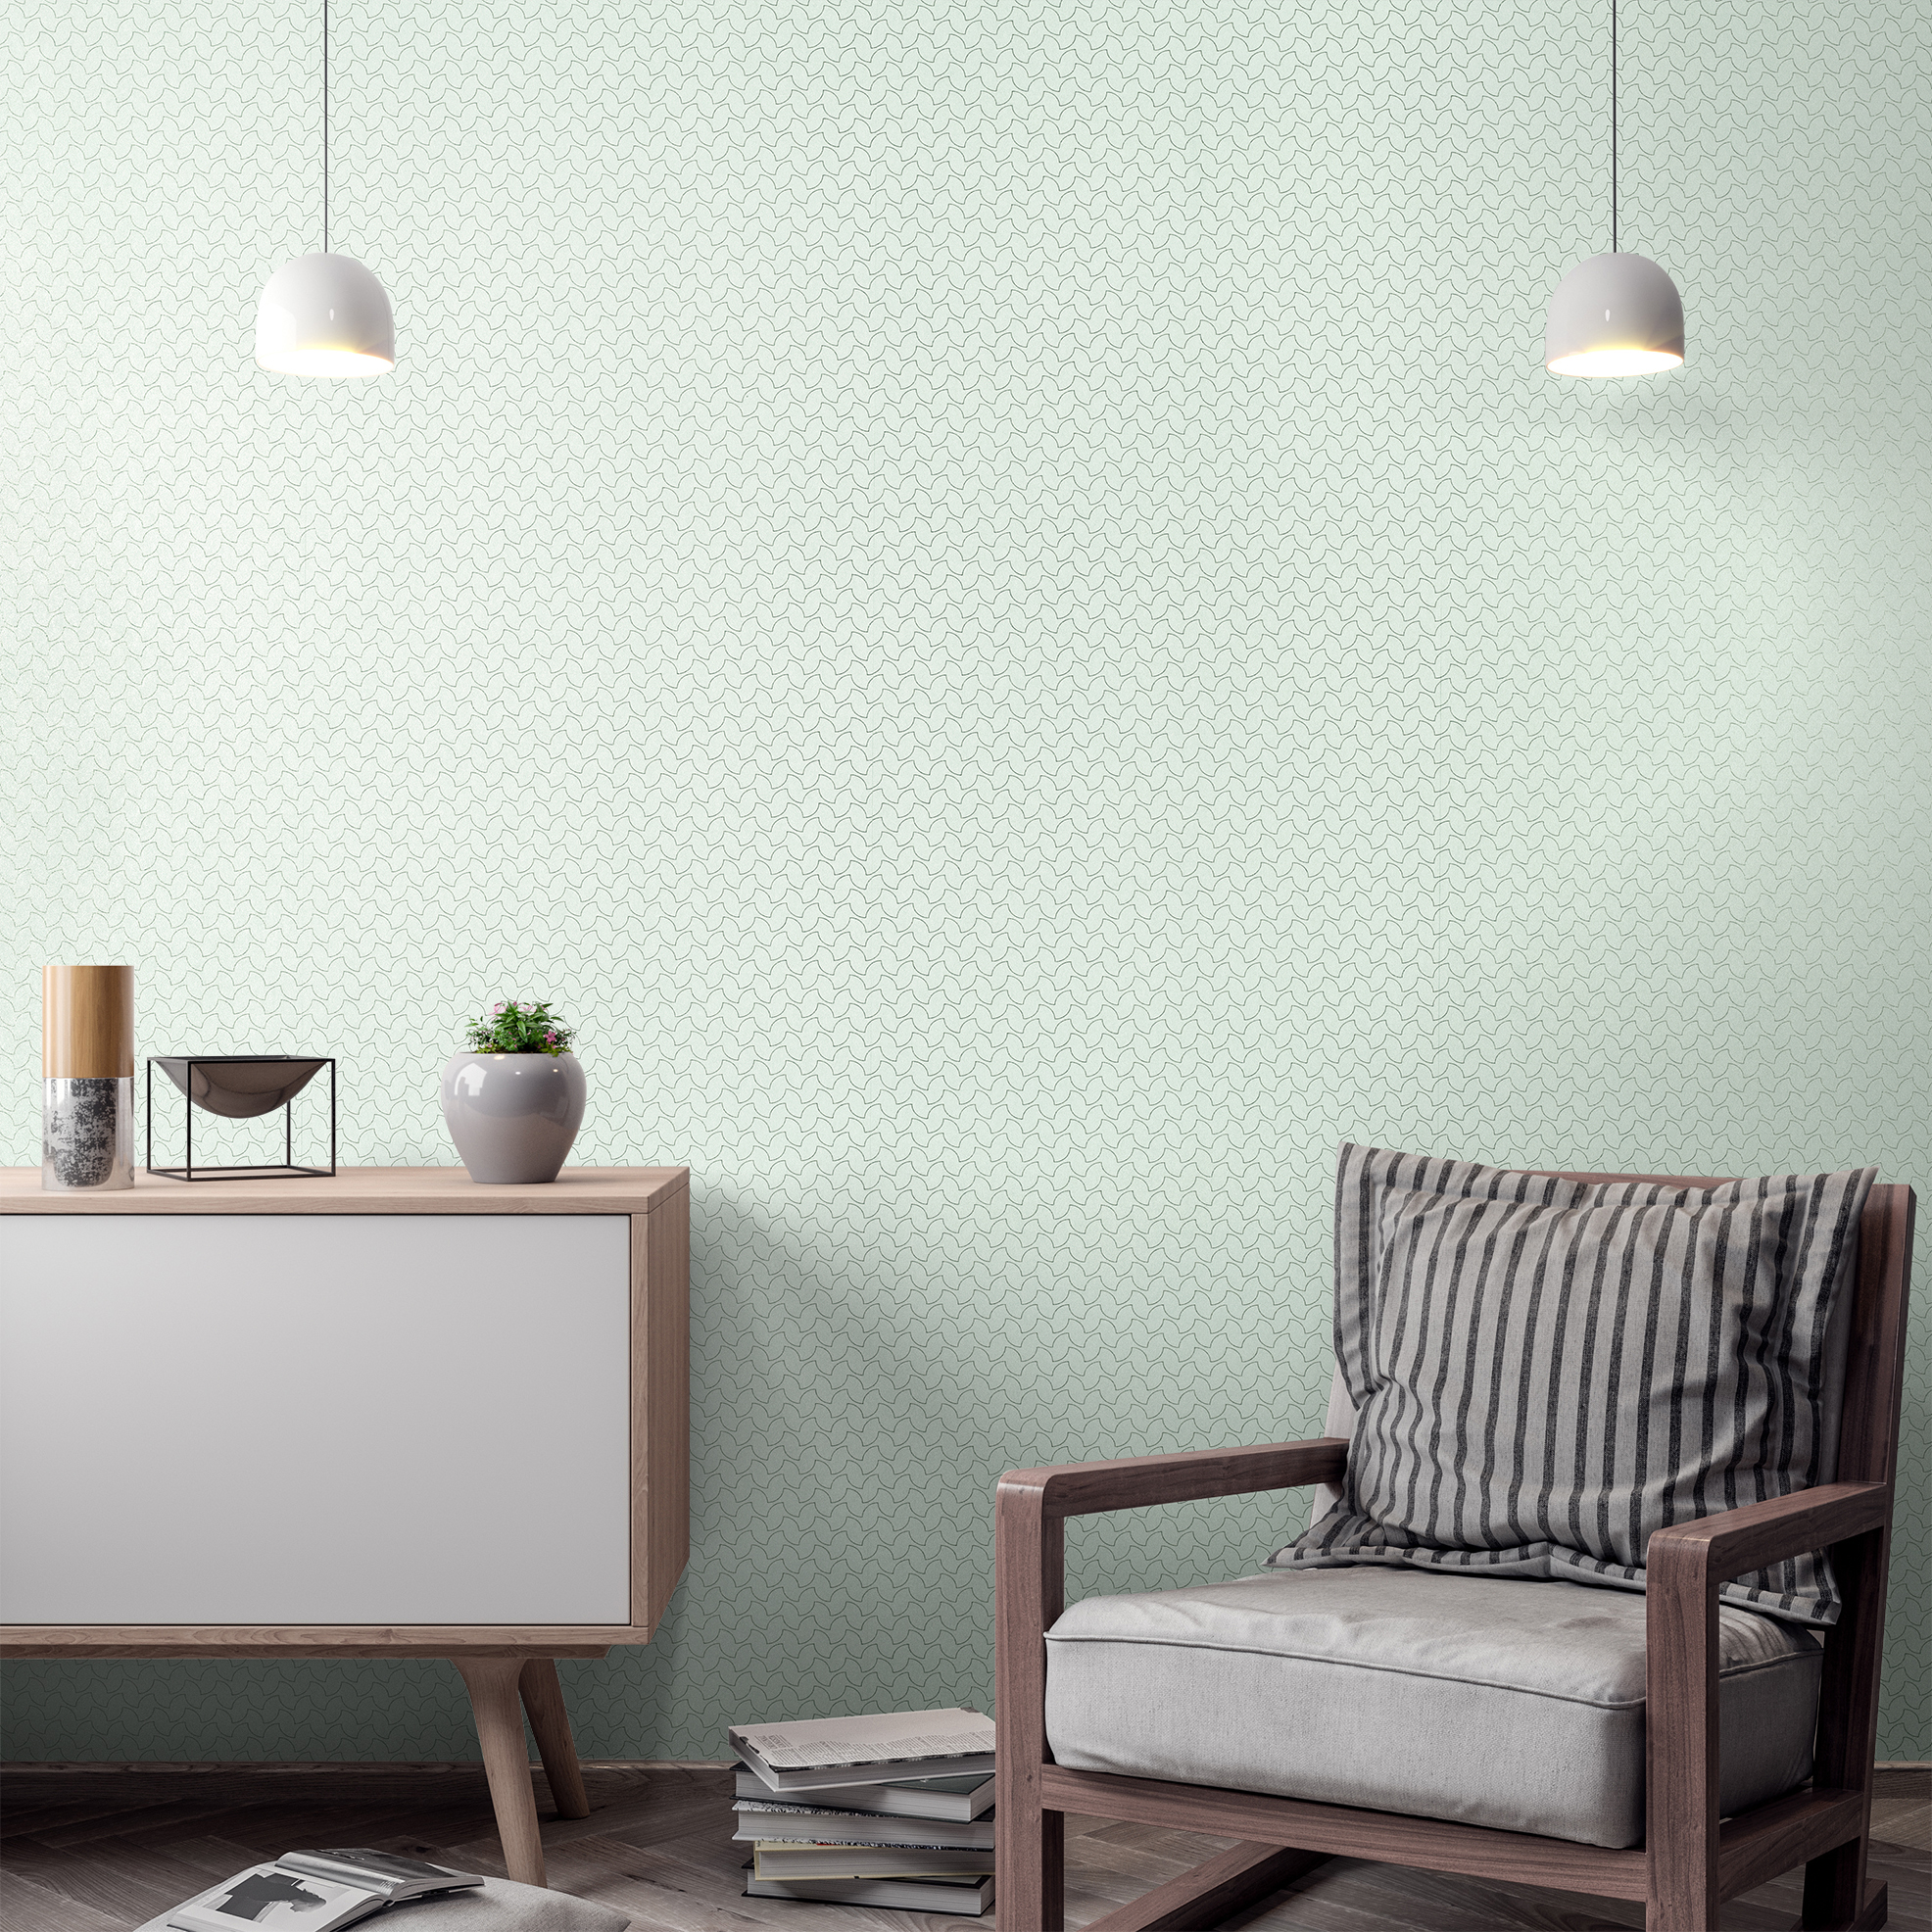 Diese minimalistische Tapete in Minzgrün unterstützt jeden Raum sehr dezent und fördert das Wohnen